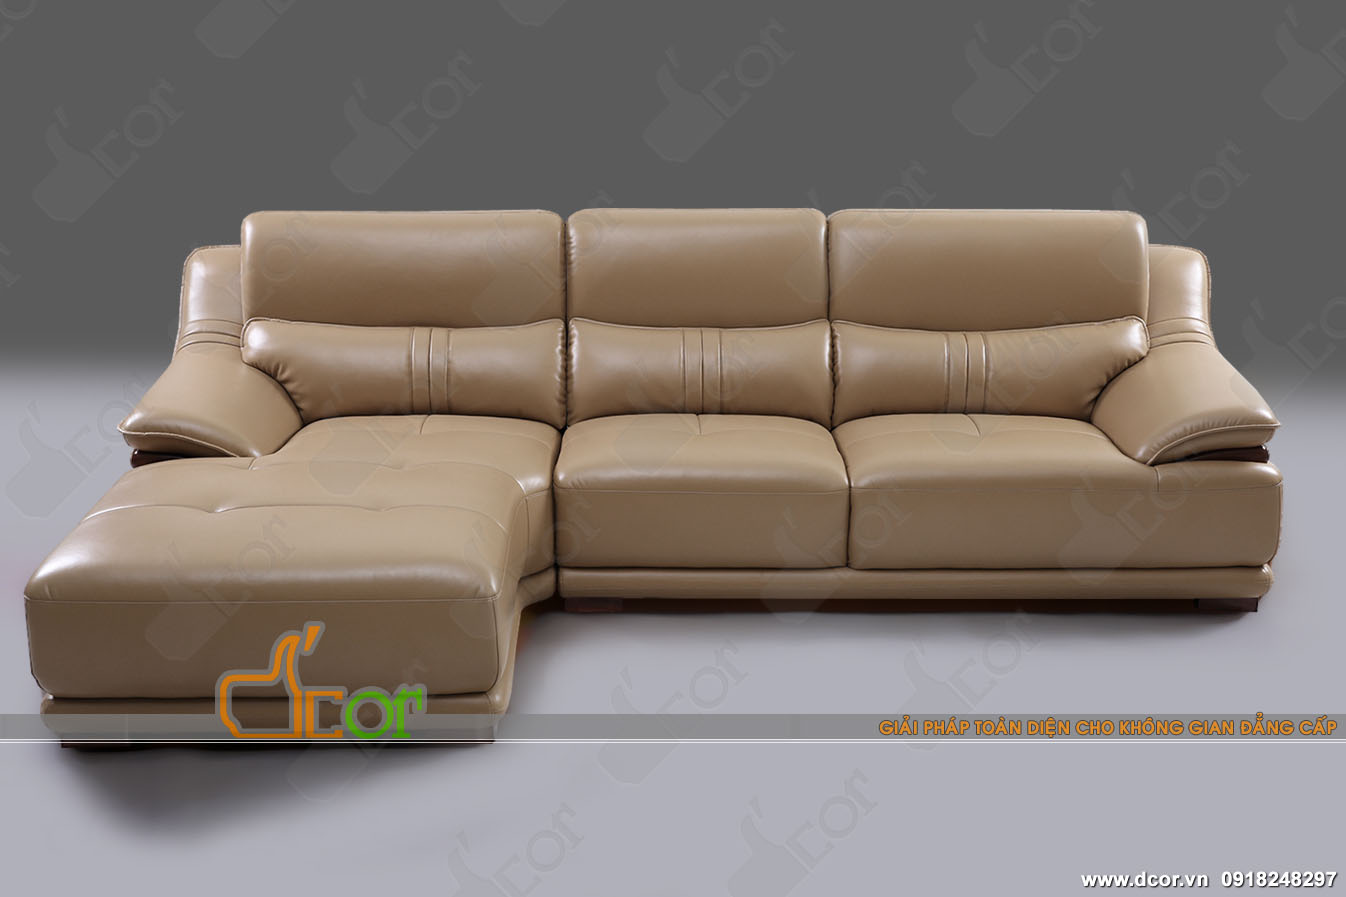 Phòng khách mới lạ, sang chảnh với mẫu ghế sofa DG503 cao cấp cực ấn tượng > phong-khach-moi-la-voi-sofa-dg503-cuc-ki-an-tuong